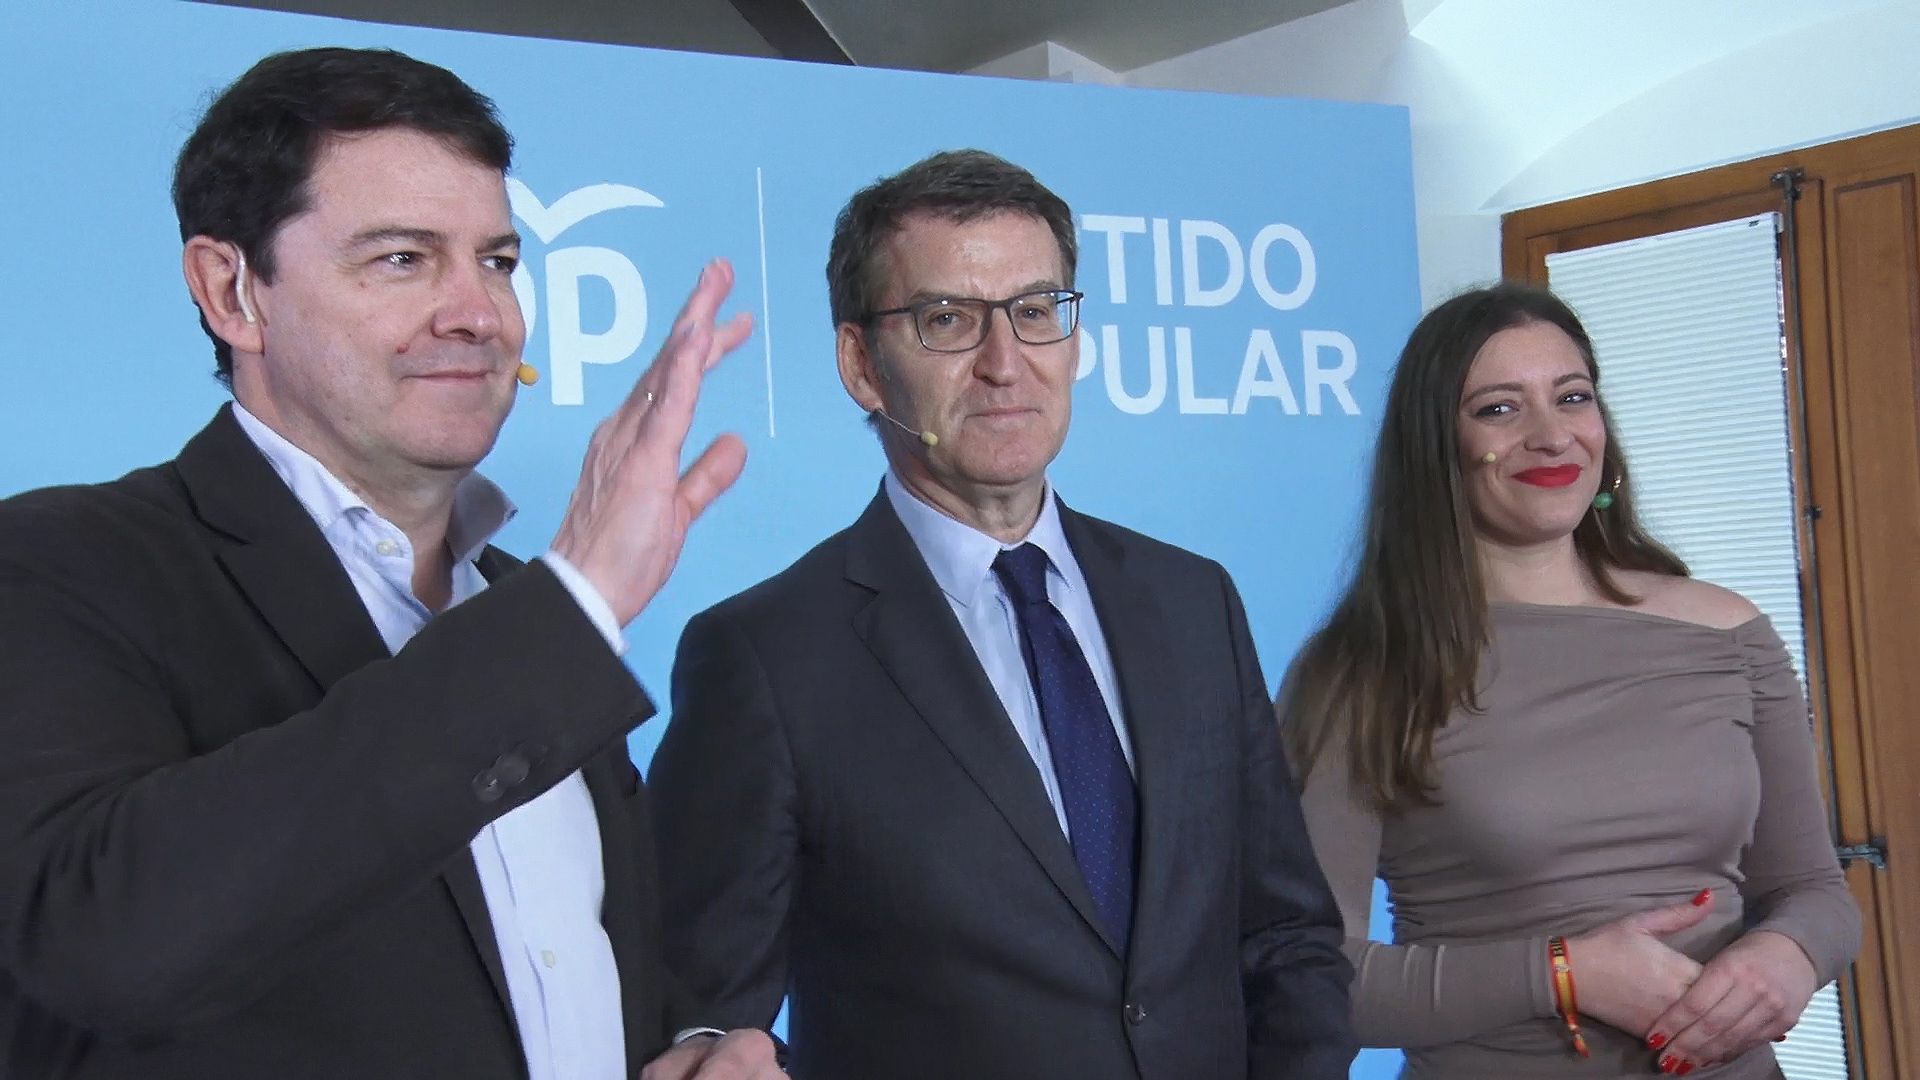 El presidente del PP, Alberto Núñez Feijóo, este miércoles en León junto a Mañueco y Muñoz. | LAURA PASTORIZA